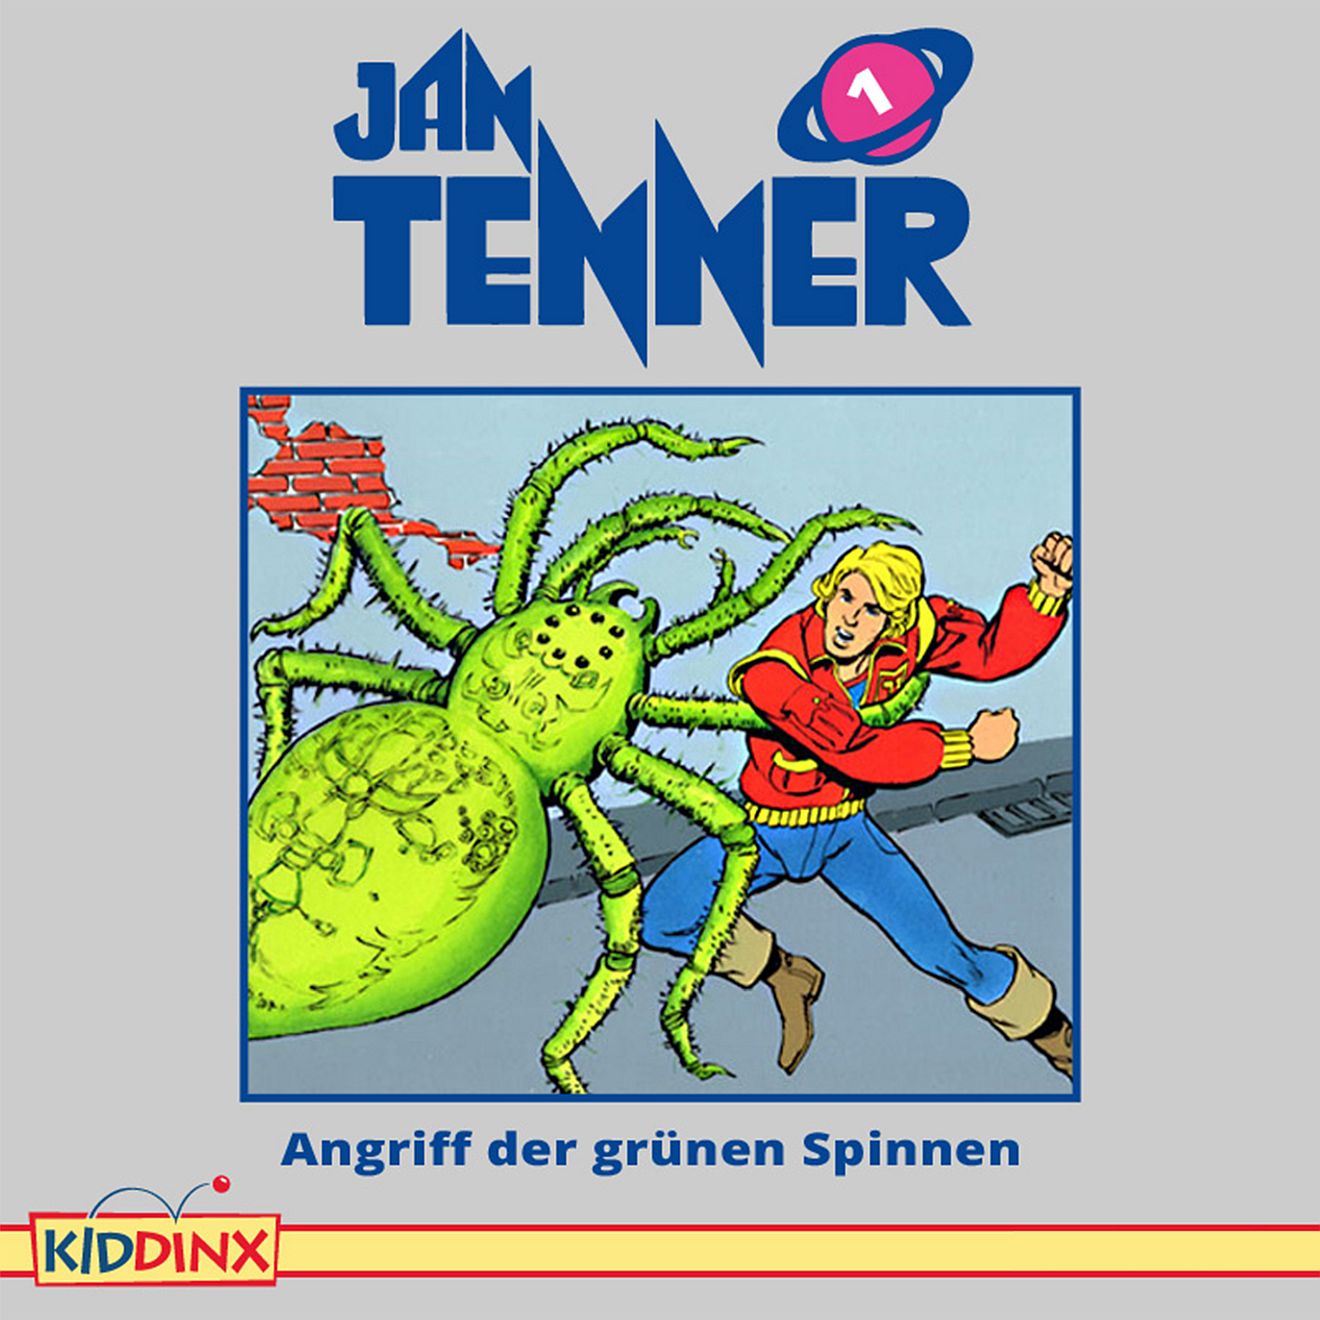 Jan Tenner Classics - Angriff der grünen Spinnen (1)